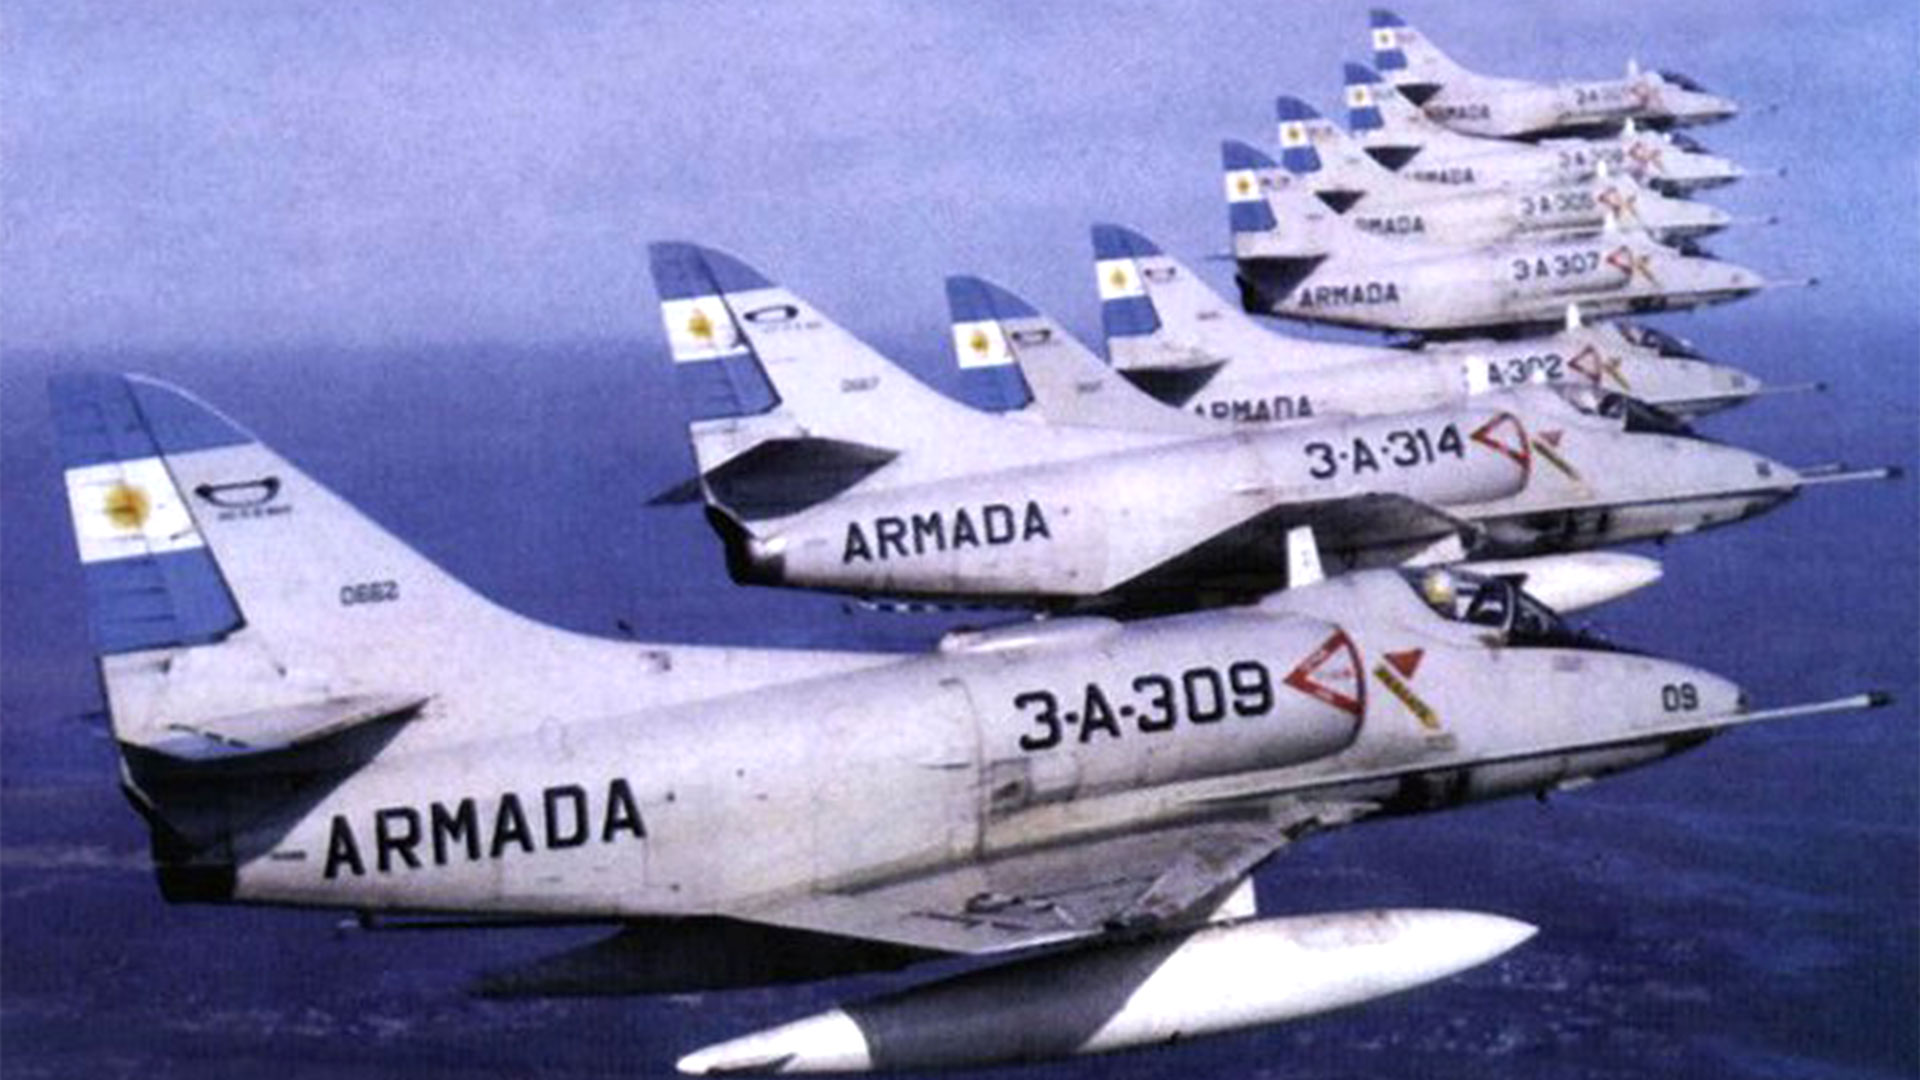 Tercera Escuadrilla Aeronaval de Caza y Ataque. El segundo avión es el de Márquez  (Fotos: Instituto Aeronaval/Armada Argentina)